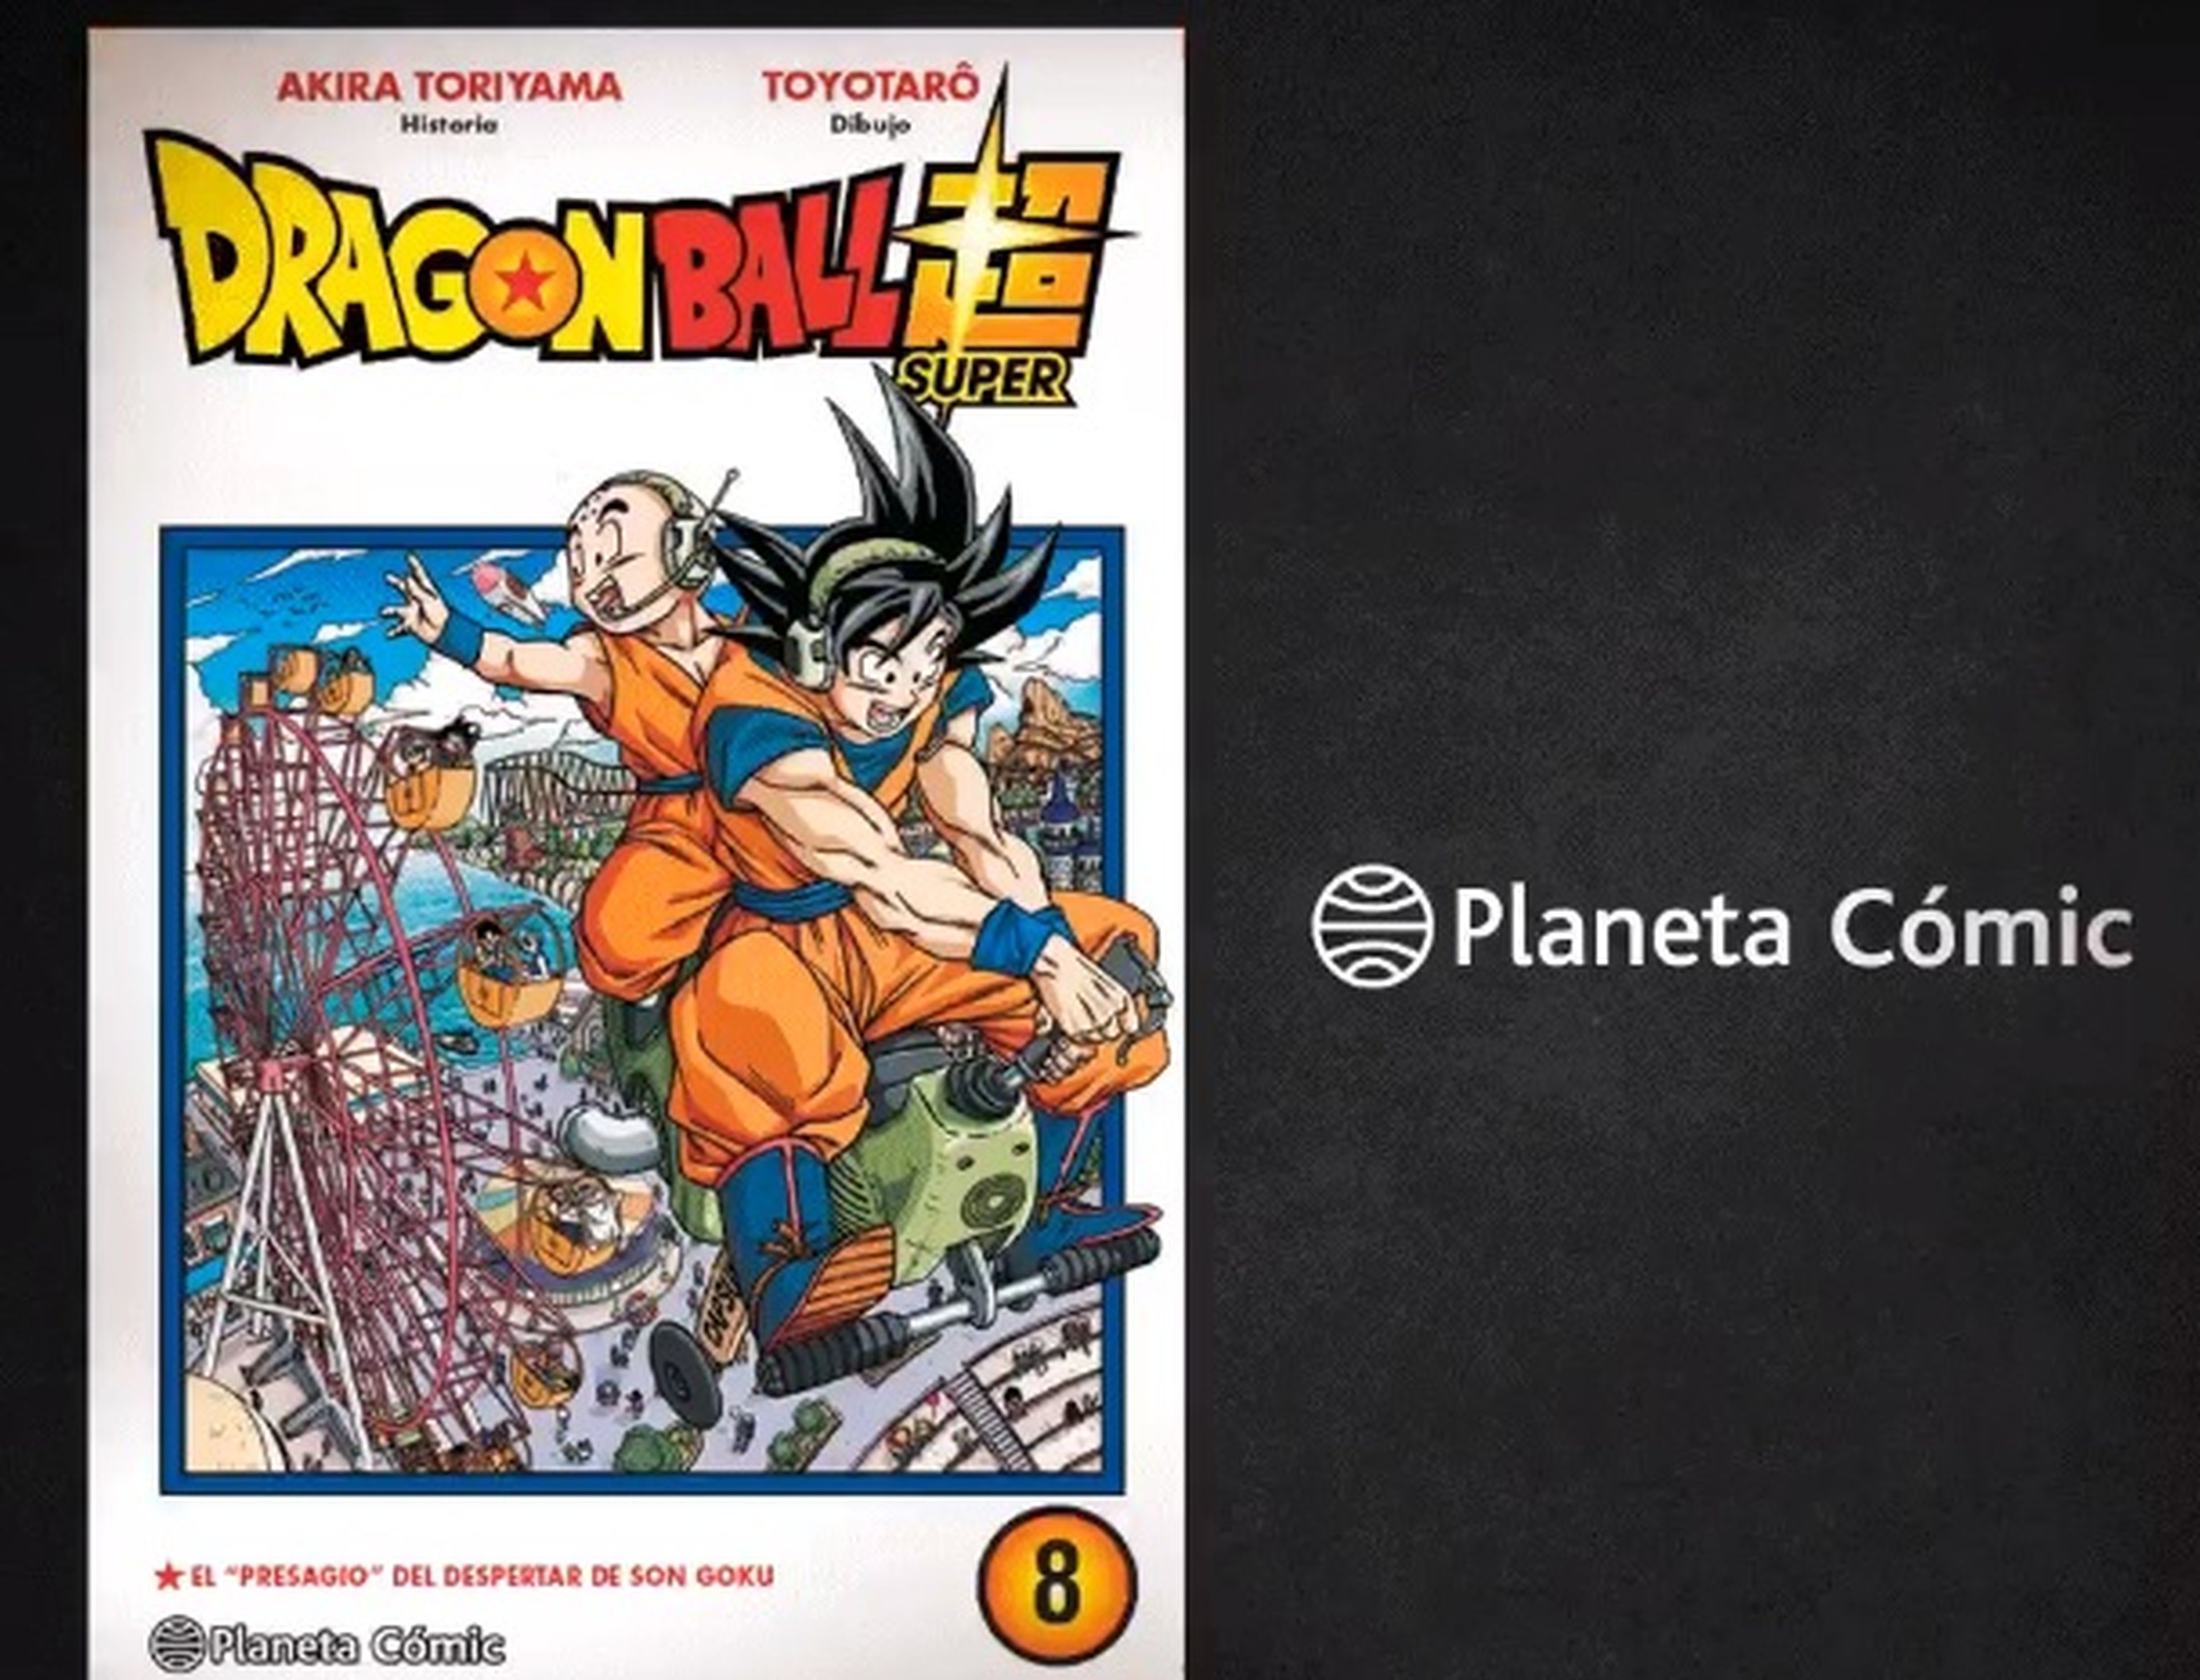 Dragon Ball Super - Portada y fecha de lanzamiento del tomo 8 en España